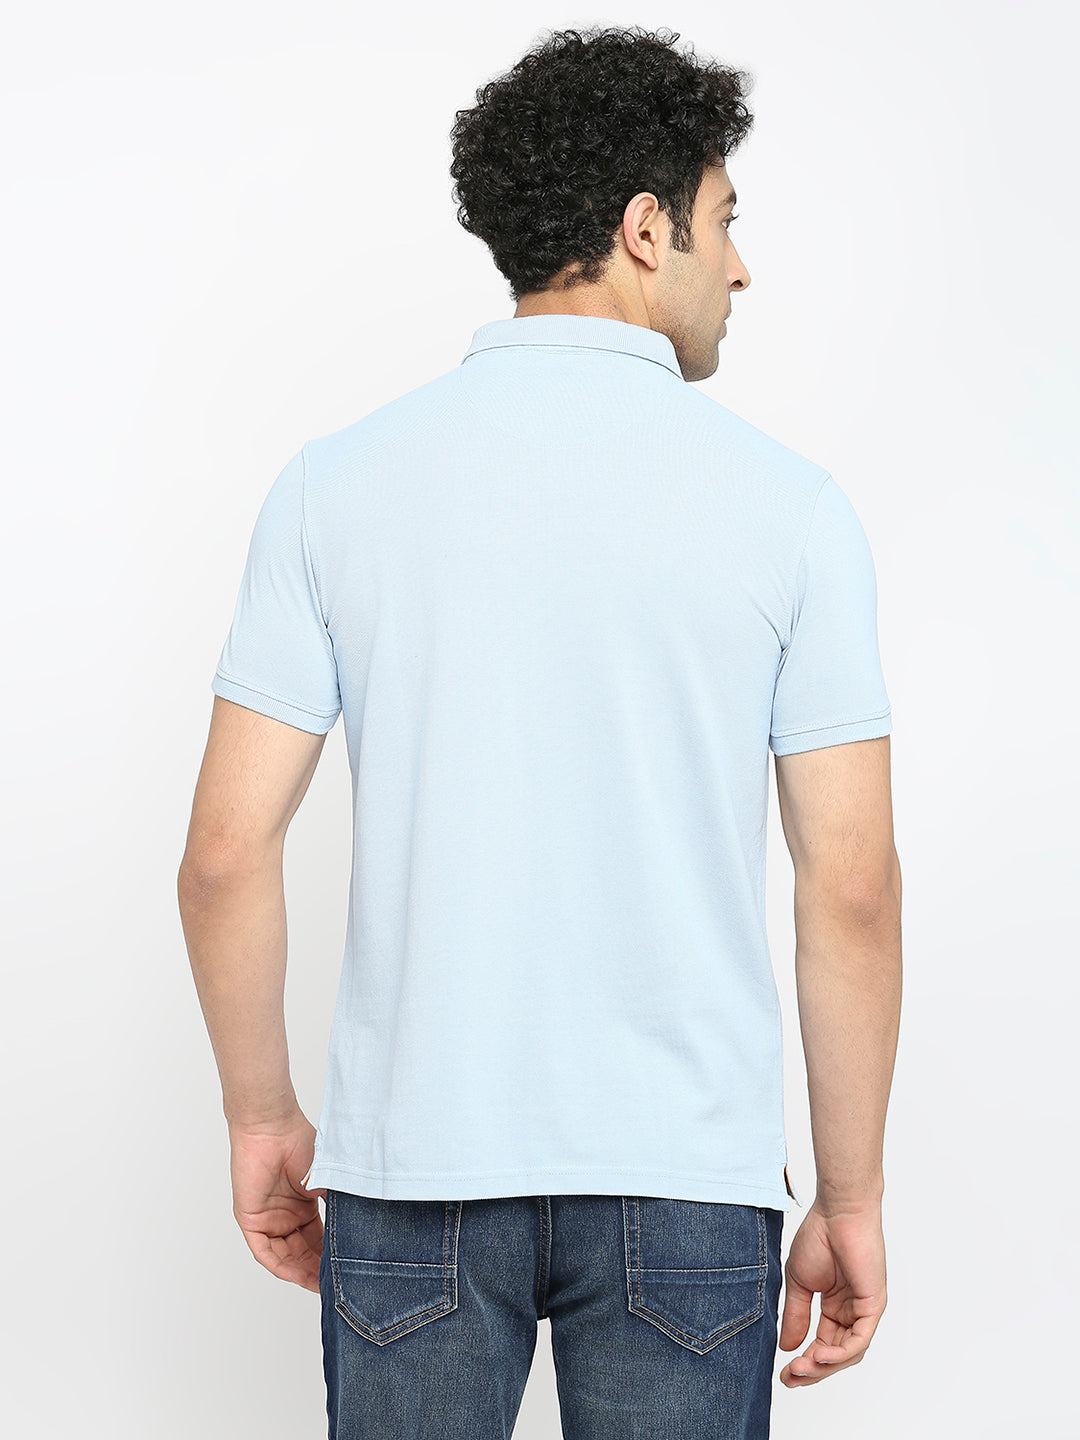 Men Premium Cotton Powder Blue Polo T-shirt - UnderJeans by Spykar